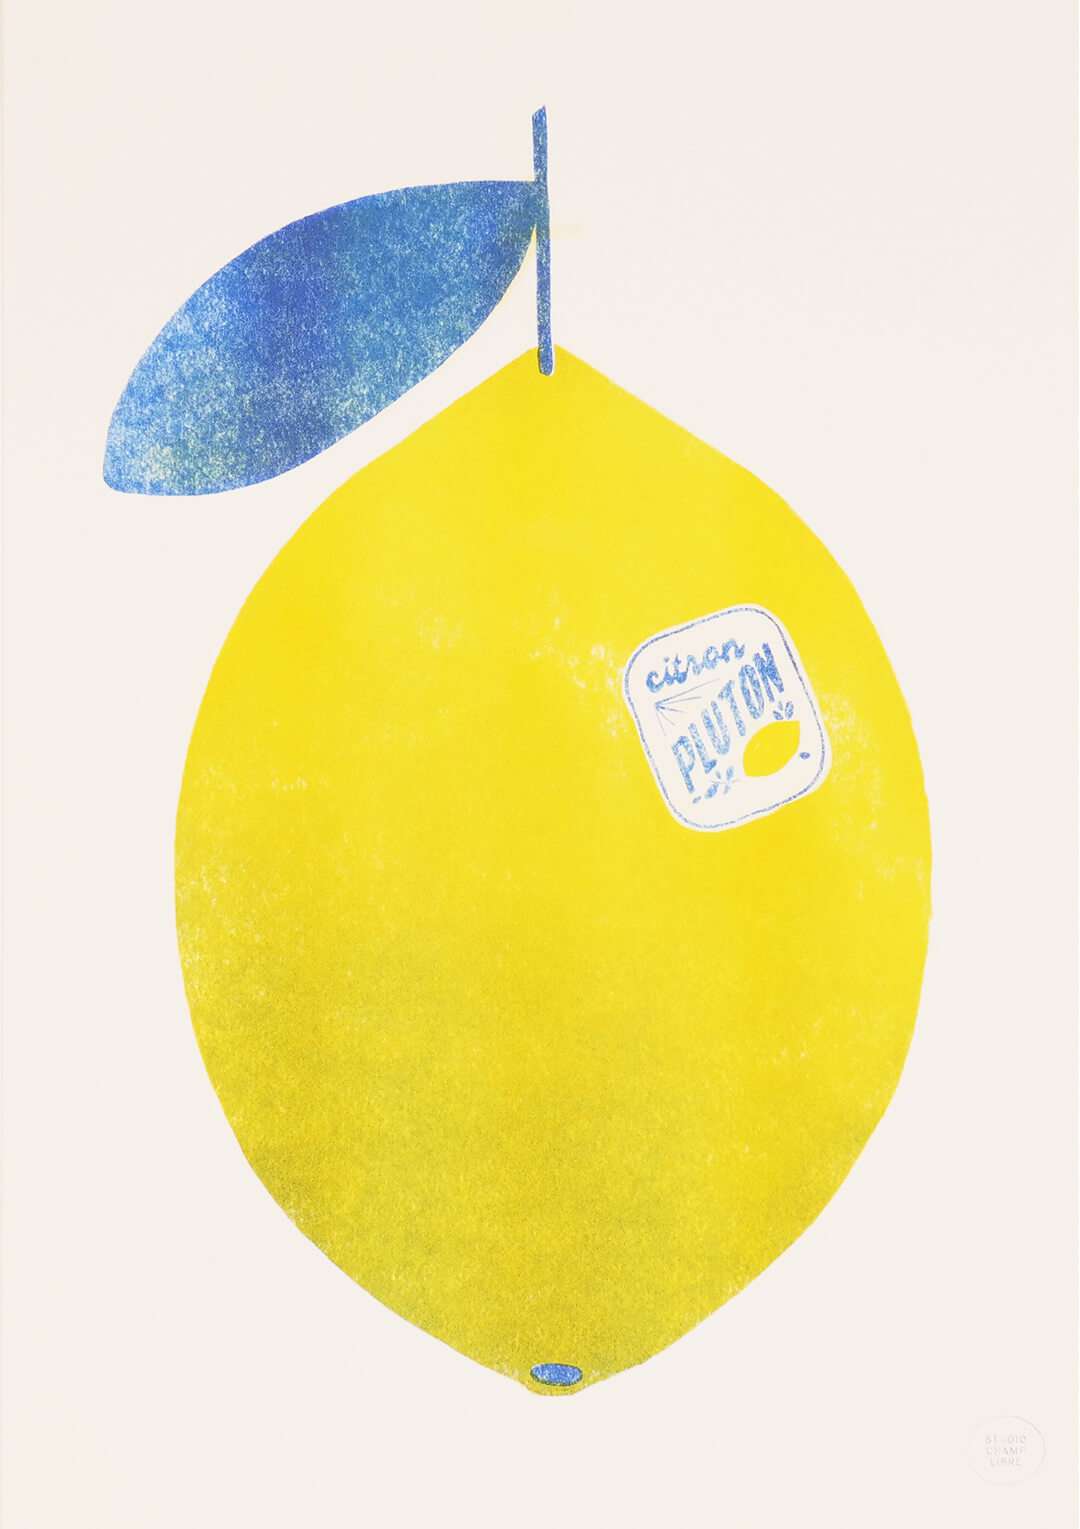 Affiche riso A3 artisanale, dessin de fruit. C'est un citron